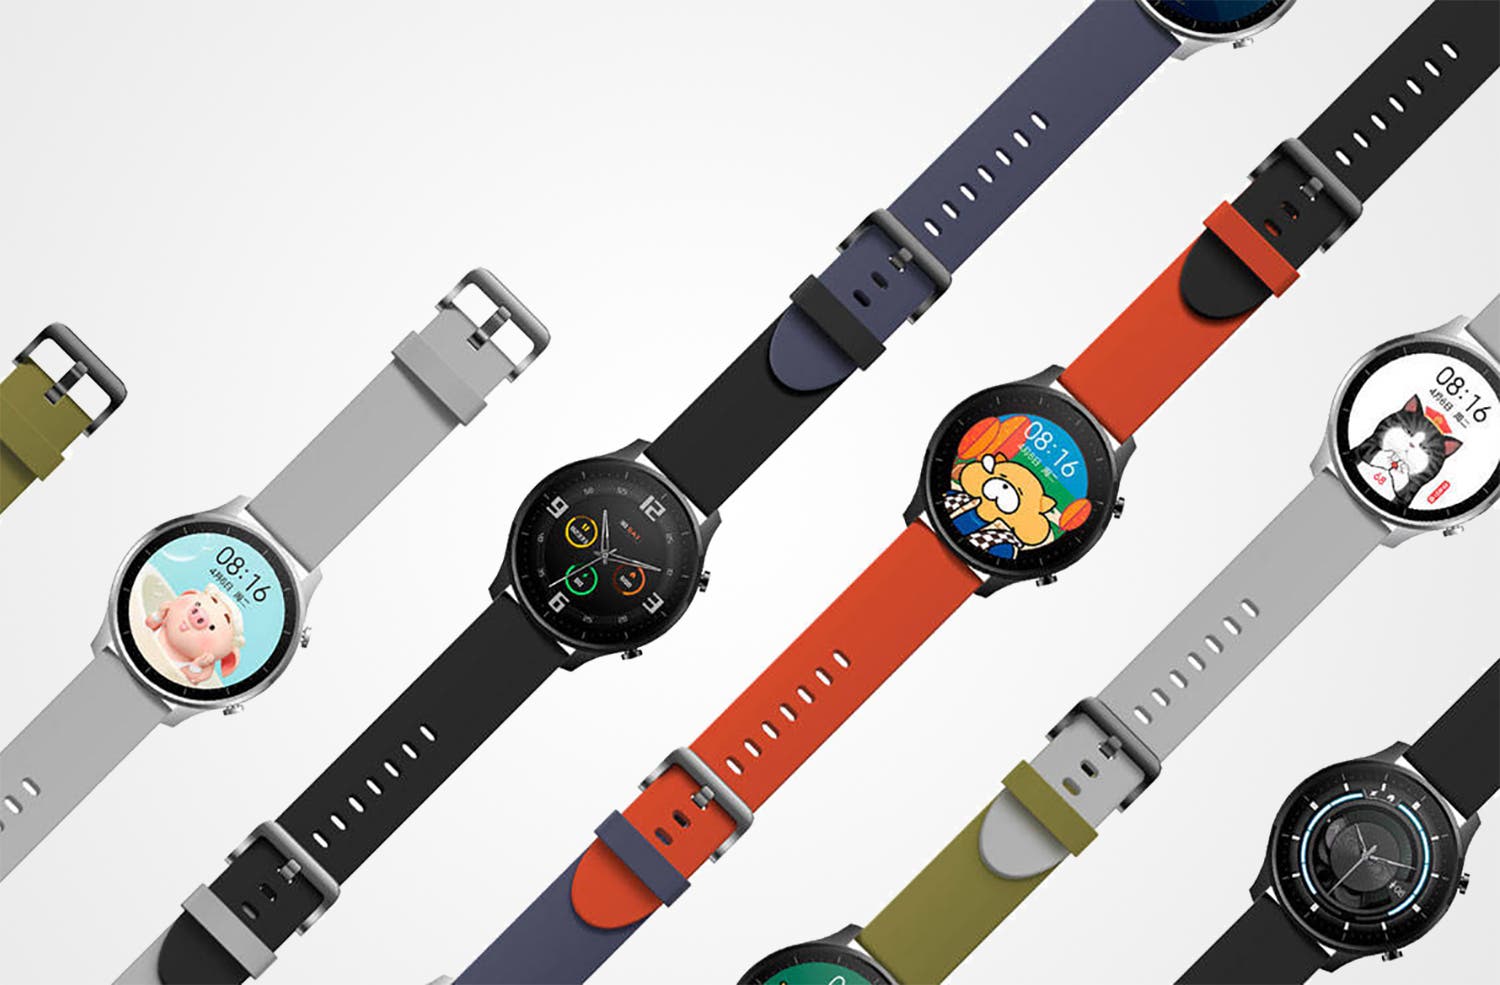  Xiaomi Lanzará Su Nuevo Reloj Inteligente Barato